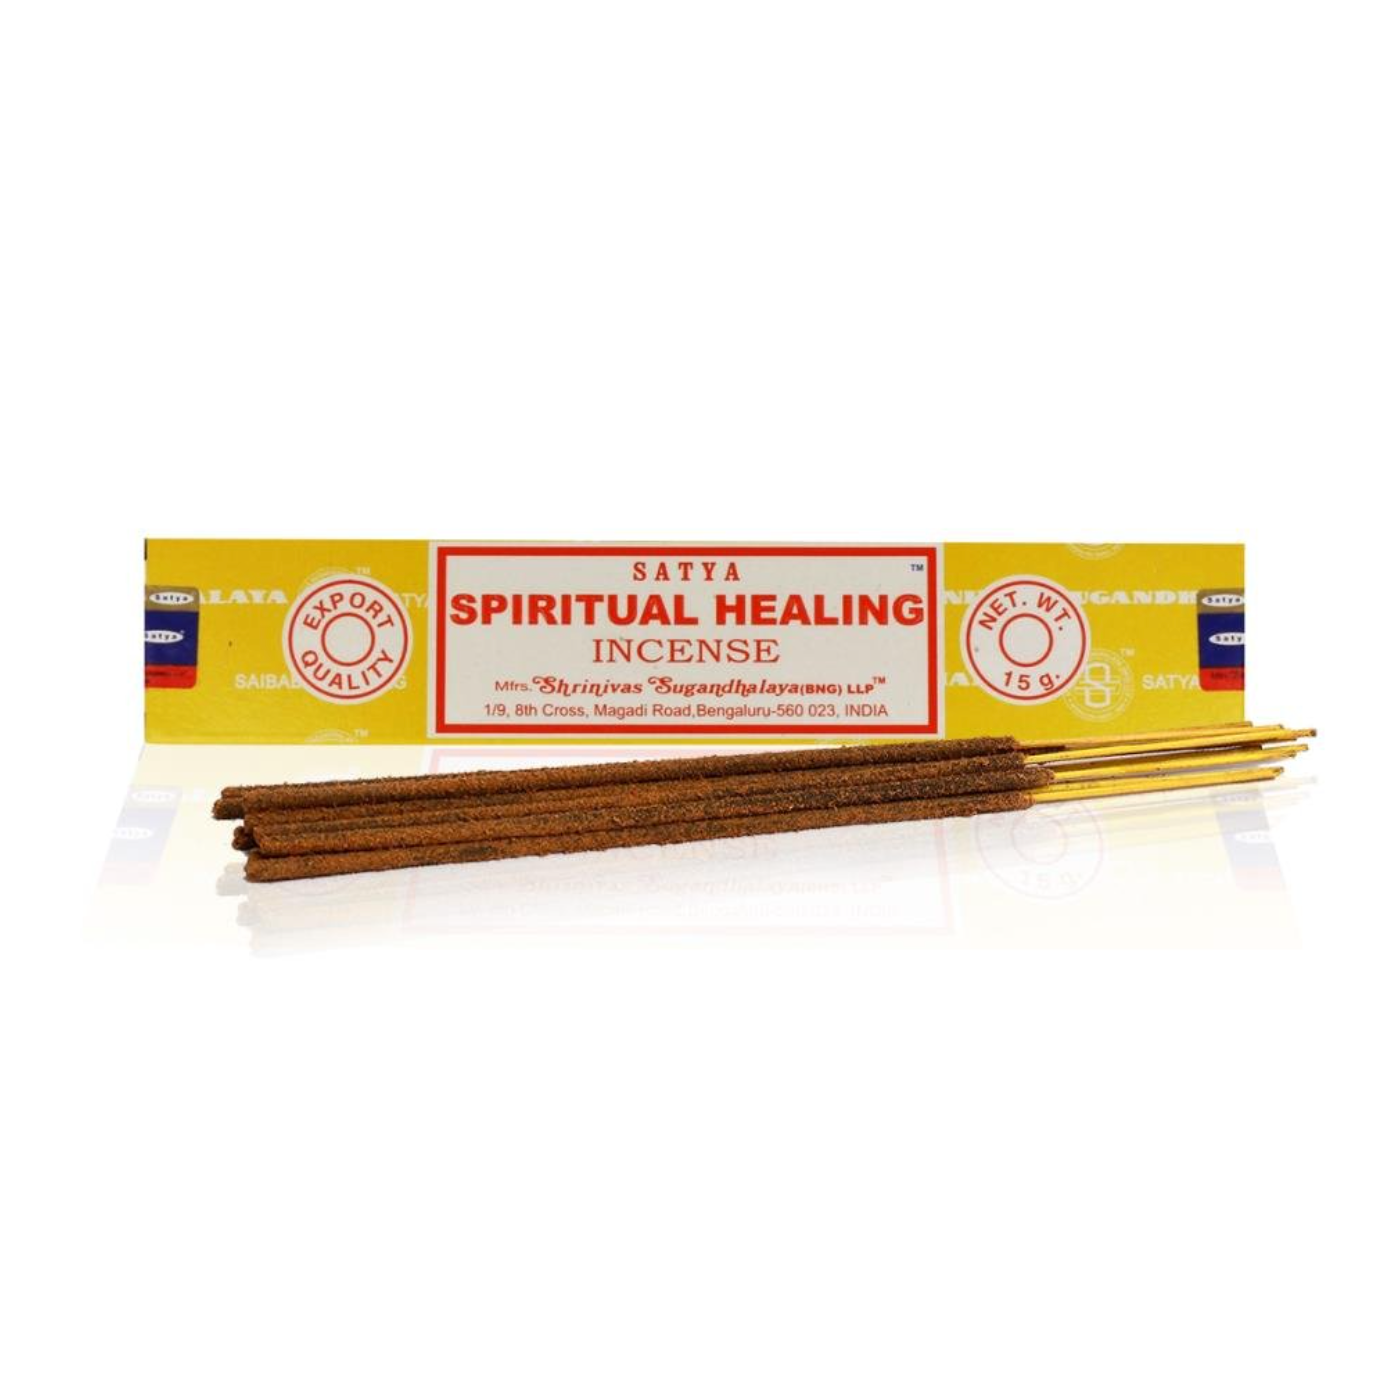 Satya Incense Sticks Spiritual Healing - yogahubstore